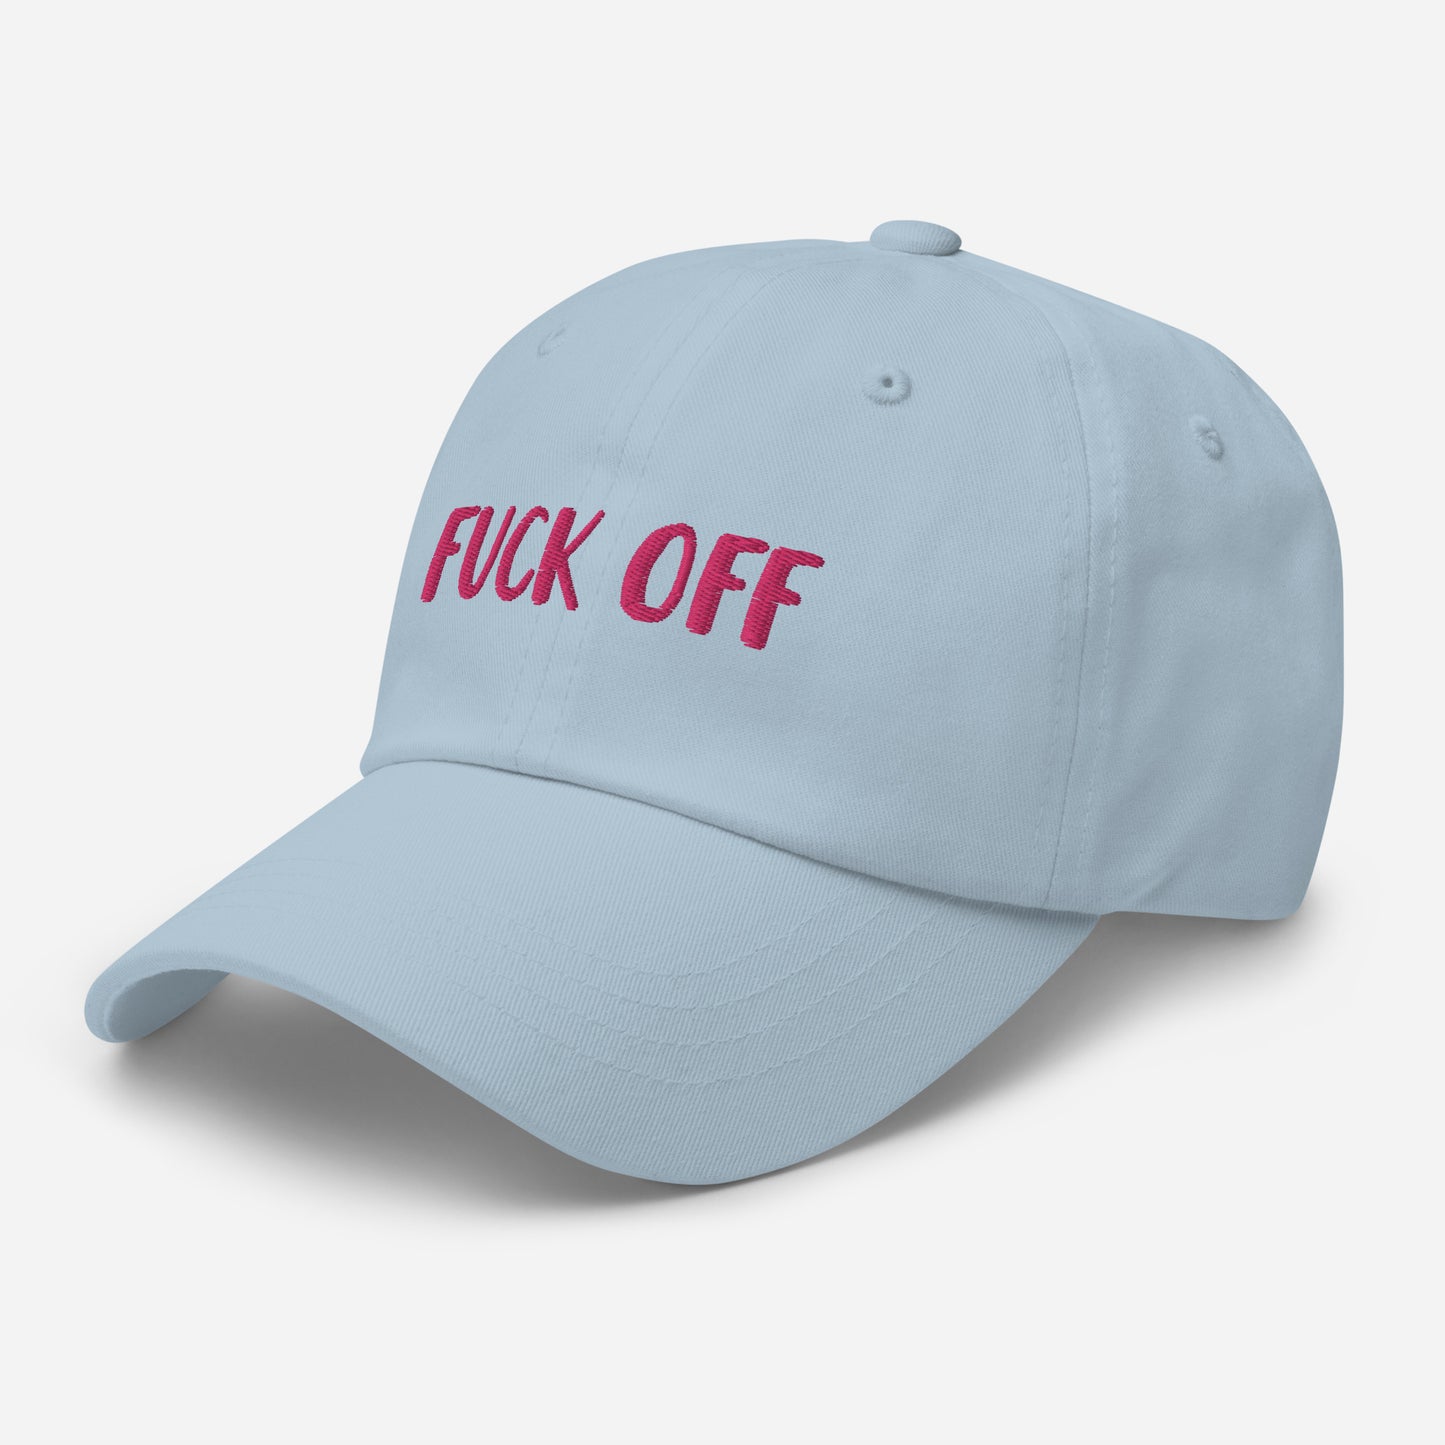 Fuck off hat